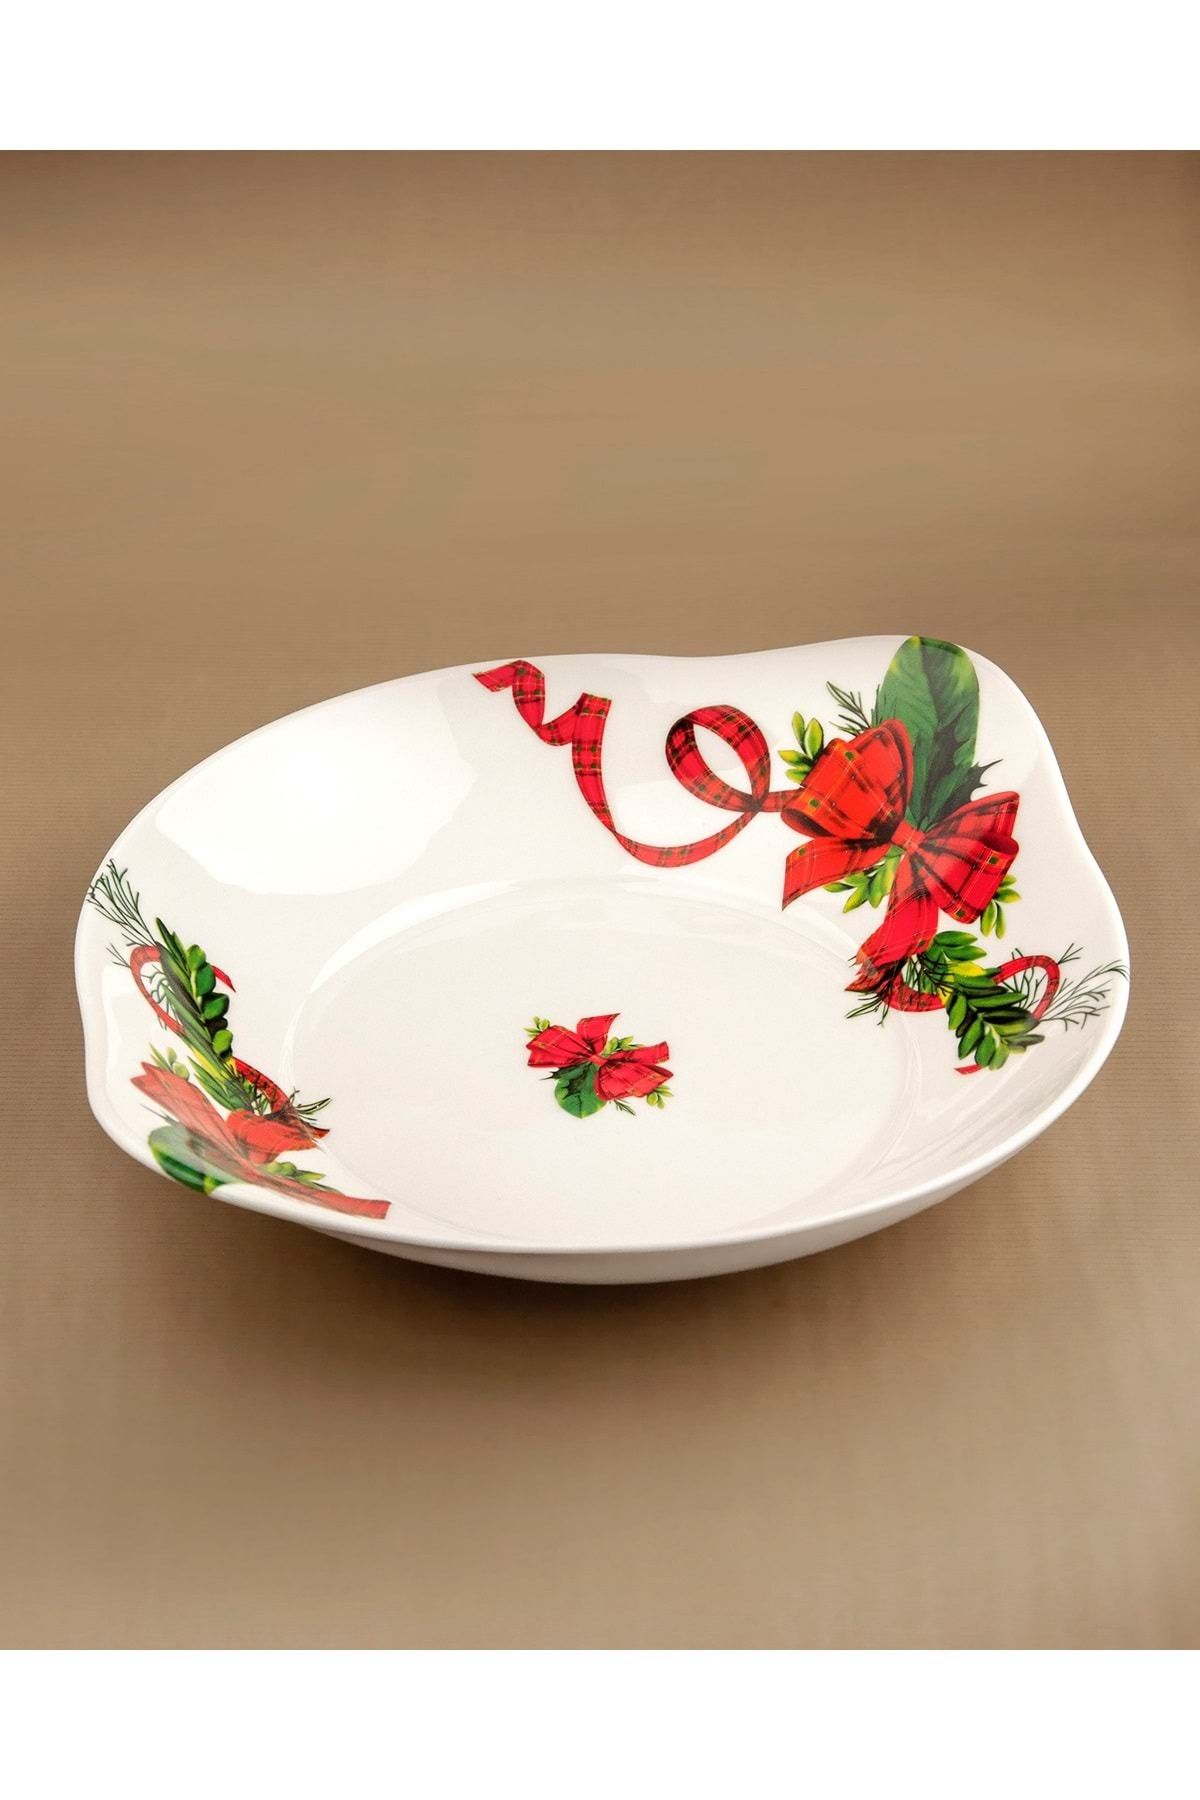 Bursa Porselen Dekor Red bow porselen fırın kabı / büyük servis tabağı